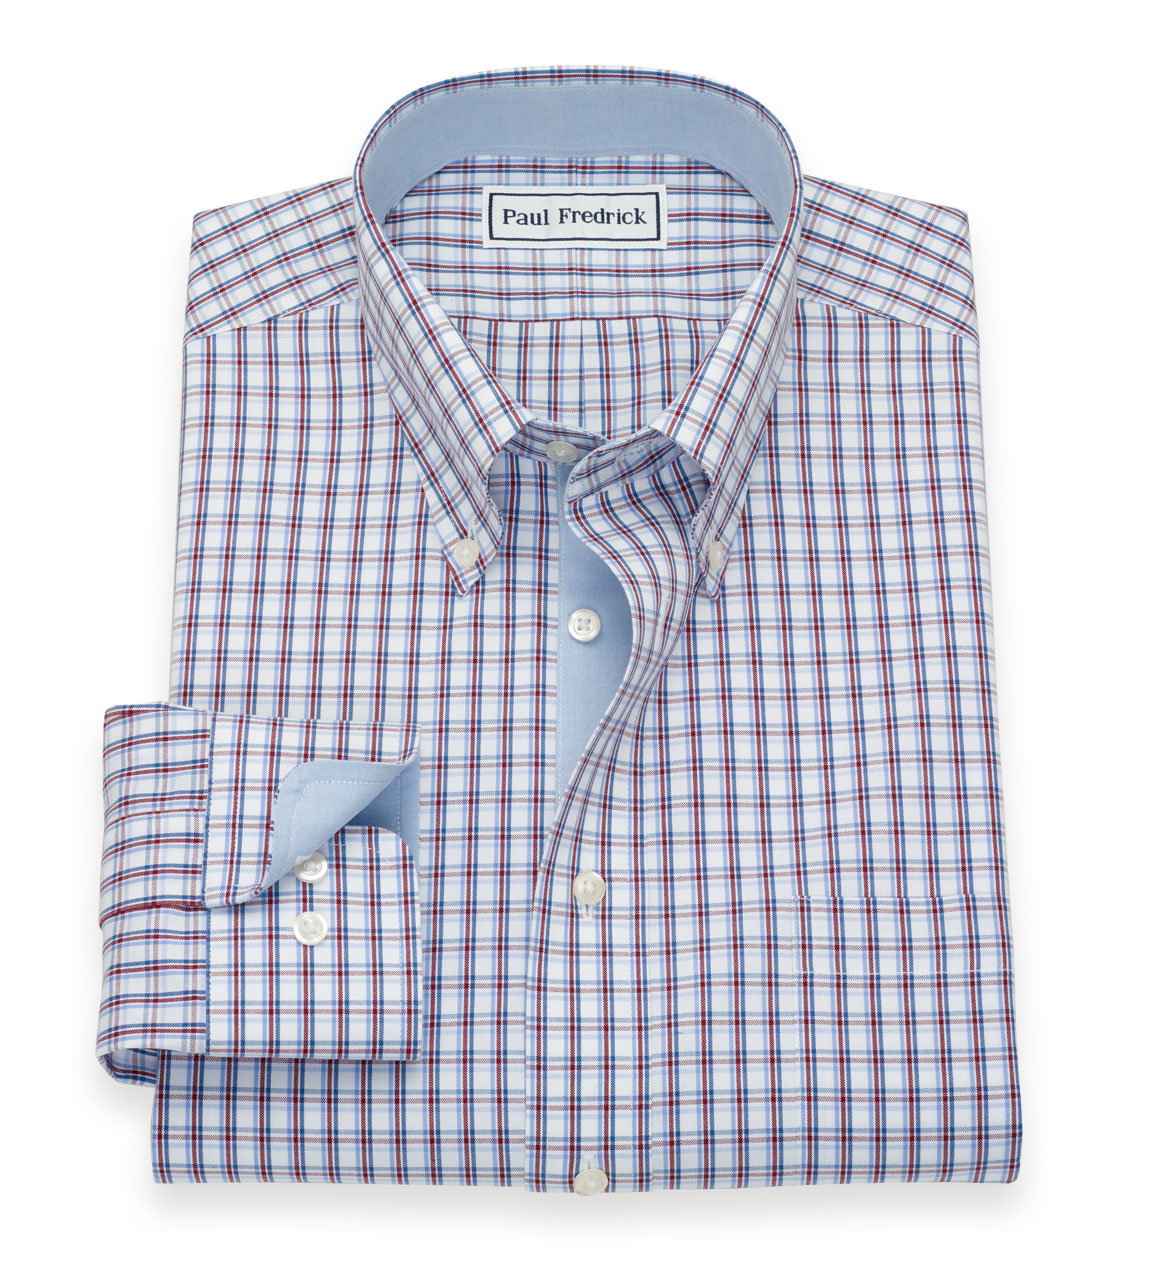 Paul Fredrick: Summer dress shirts now $39. | Milled